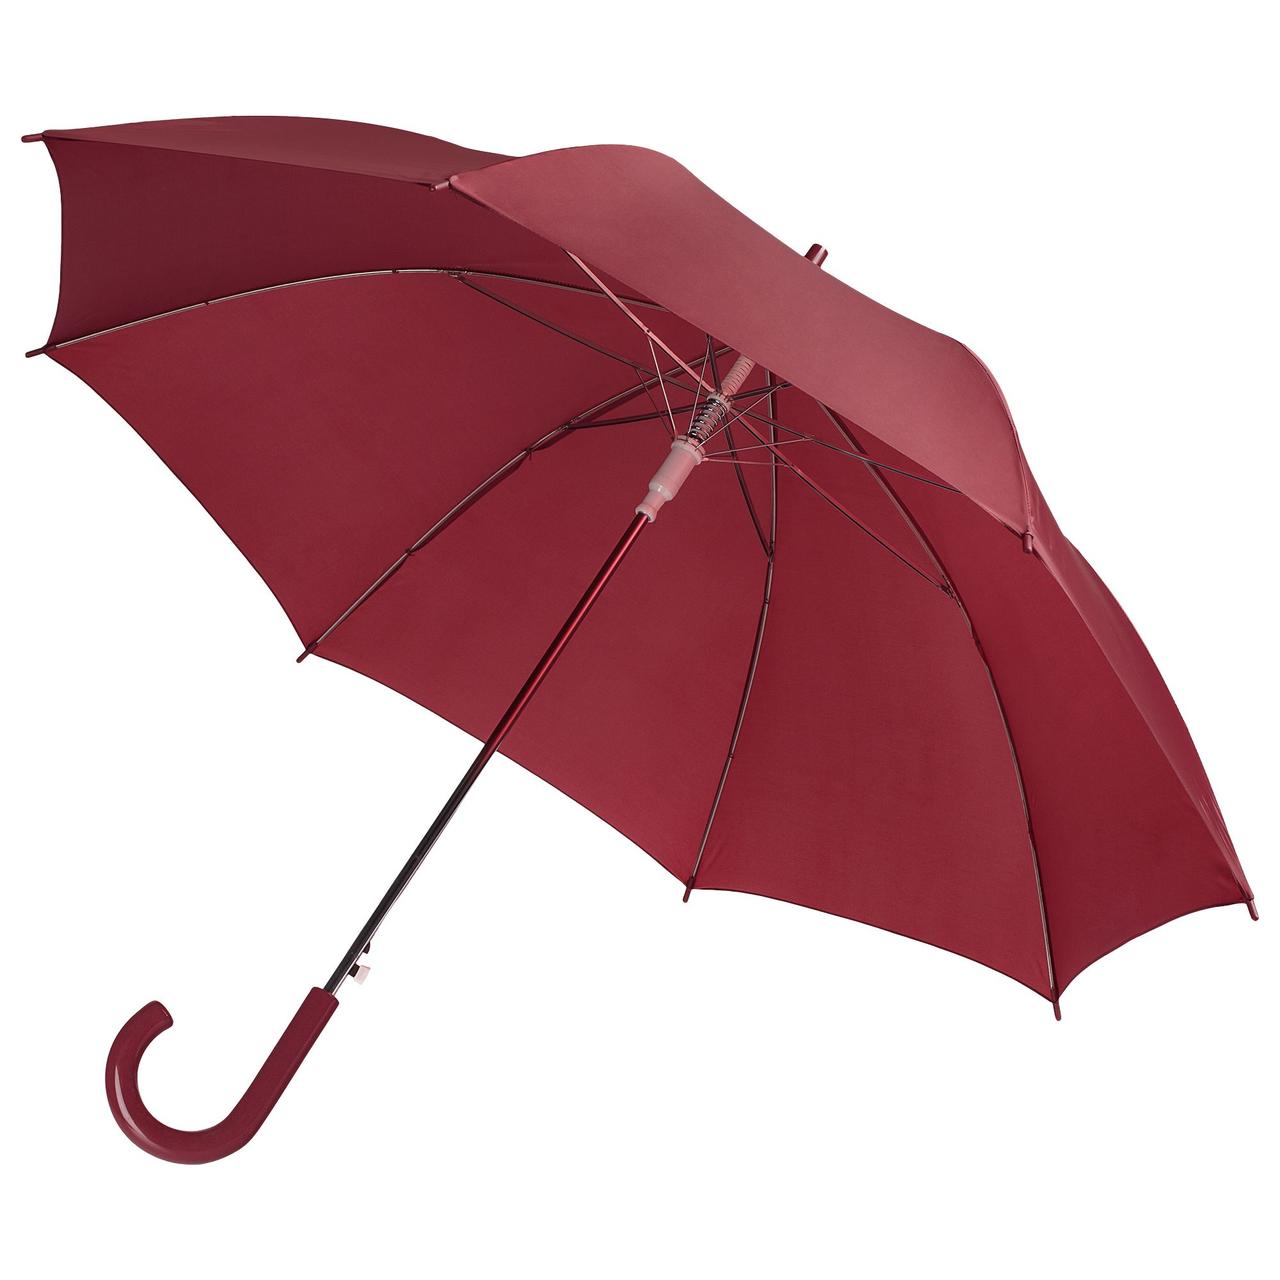 Зонт-трость Unit Promo, бордовый (артикул 1233.55), фото 1